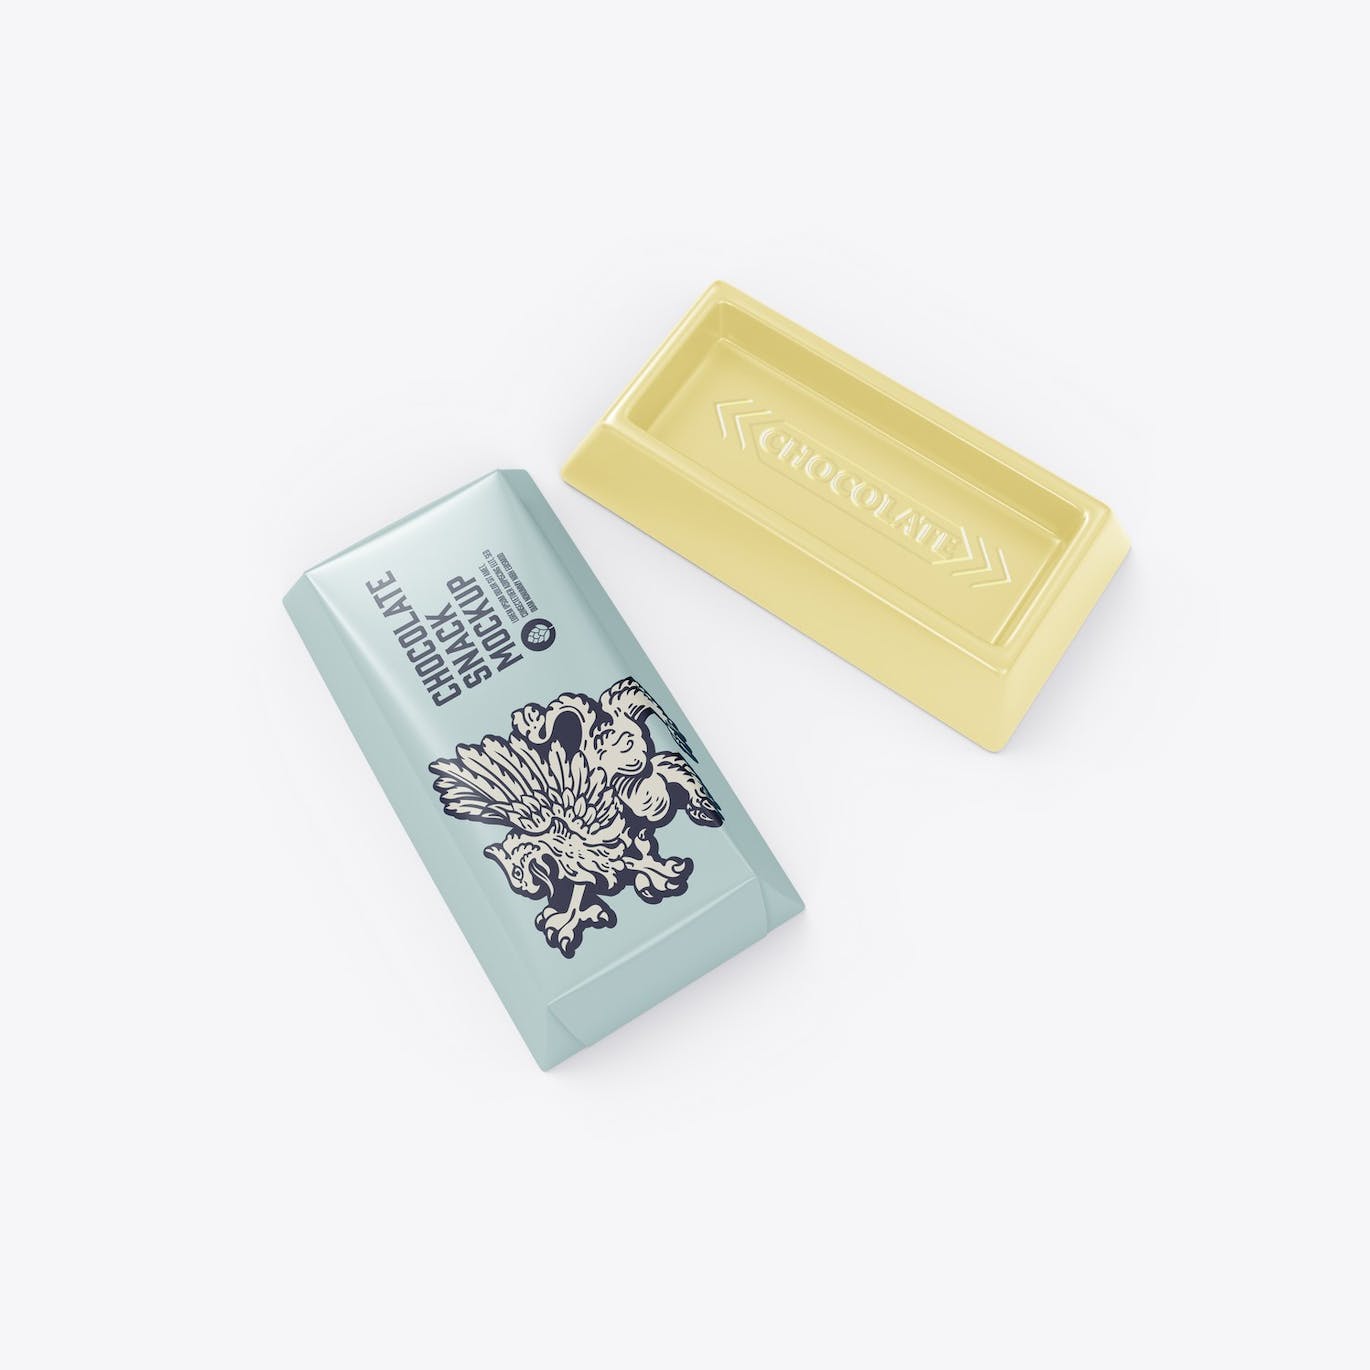 巧克力零食小包装设计样机模板 Small Pack Chocolates Mockup 样机素材 第5张